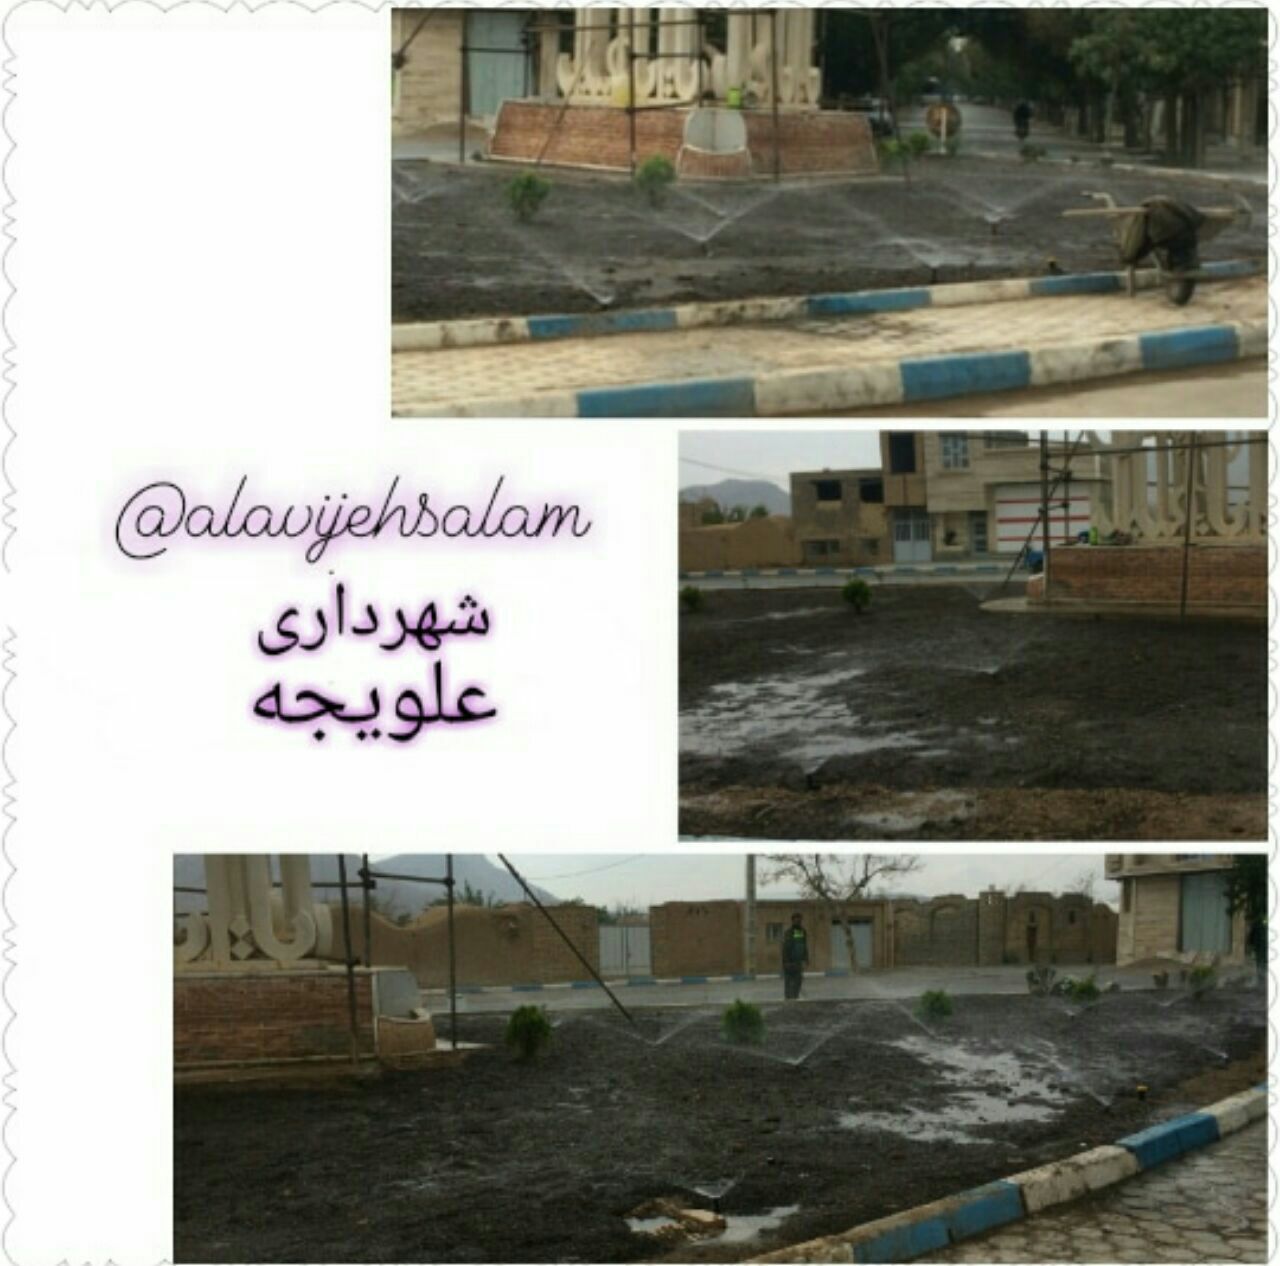 اتمام عملیات لوله کشی و آبیاری بارانی میدان امام حسین (ع) توسط شهرداری شهر علویجه